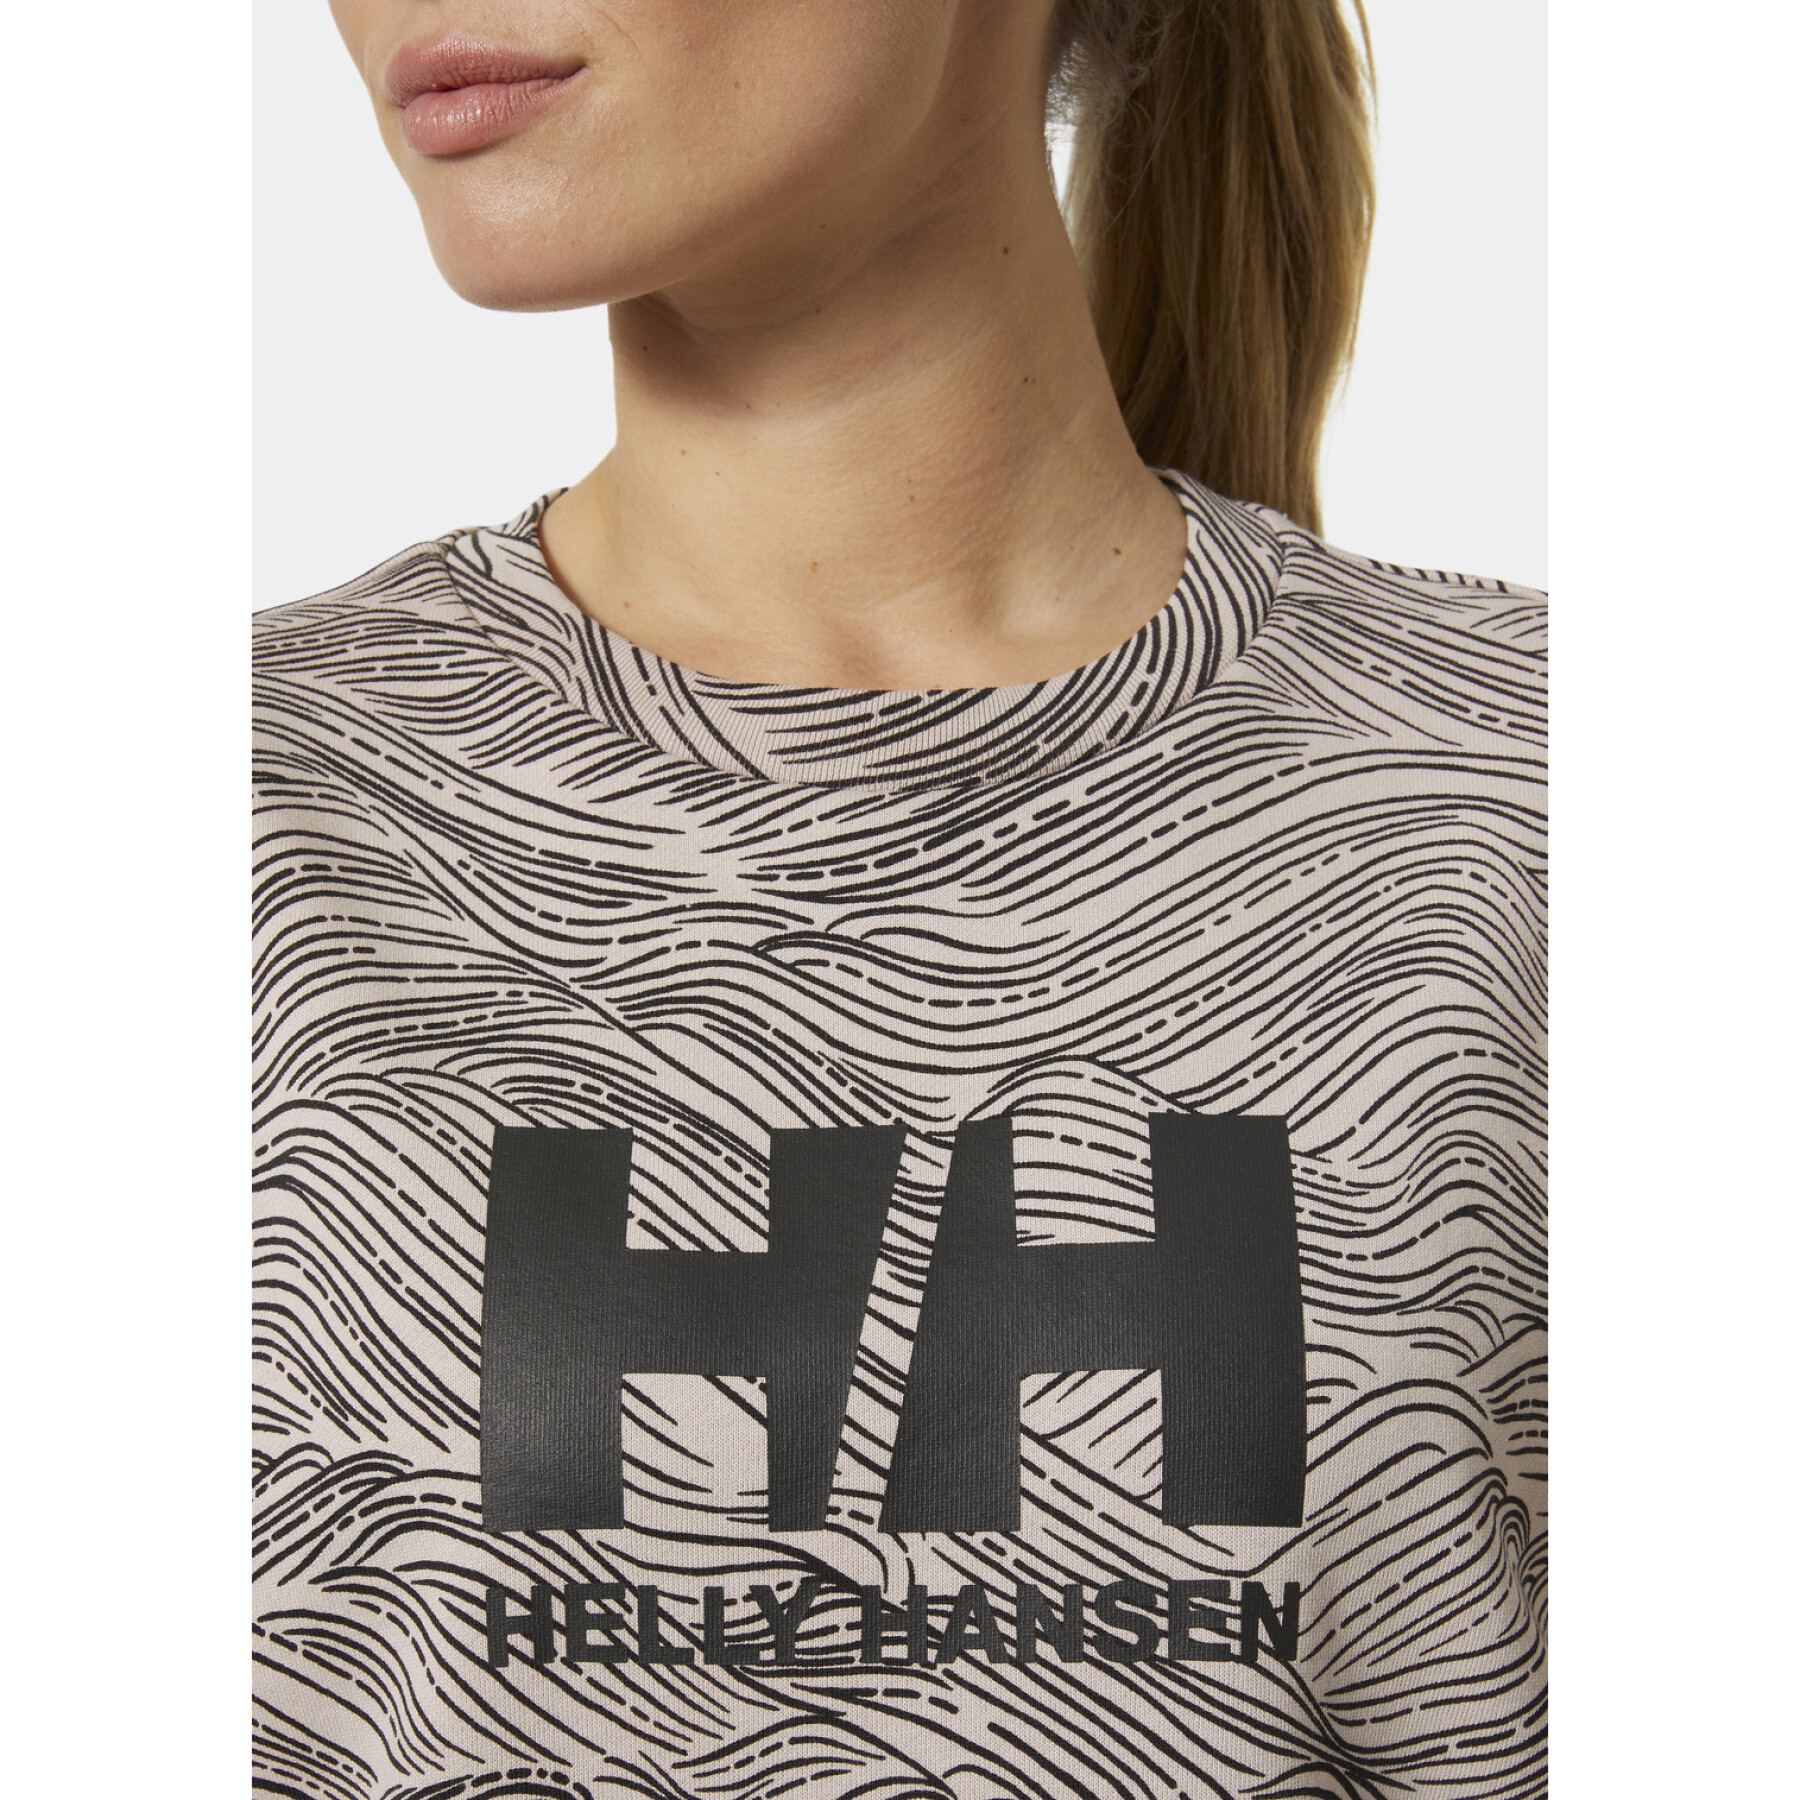 Sweatshirt col rond femme Helly Hansen Graphic 2